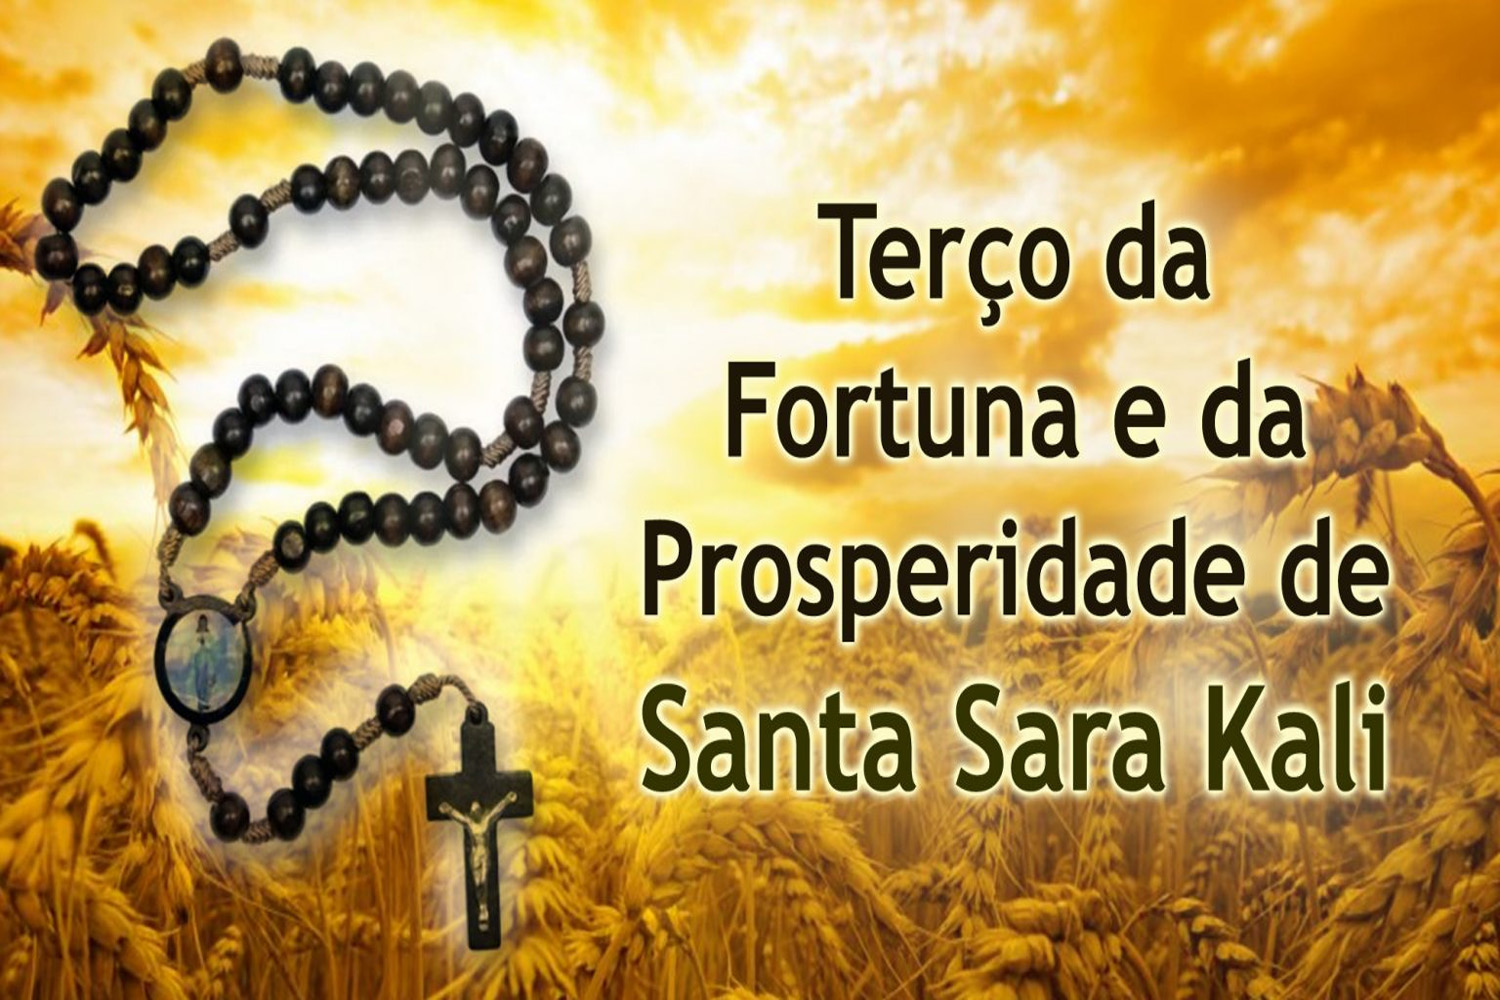 Terço da Fortuna e da Prosperidade de Santa Sara Kali